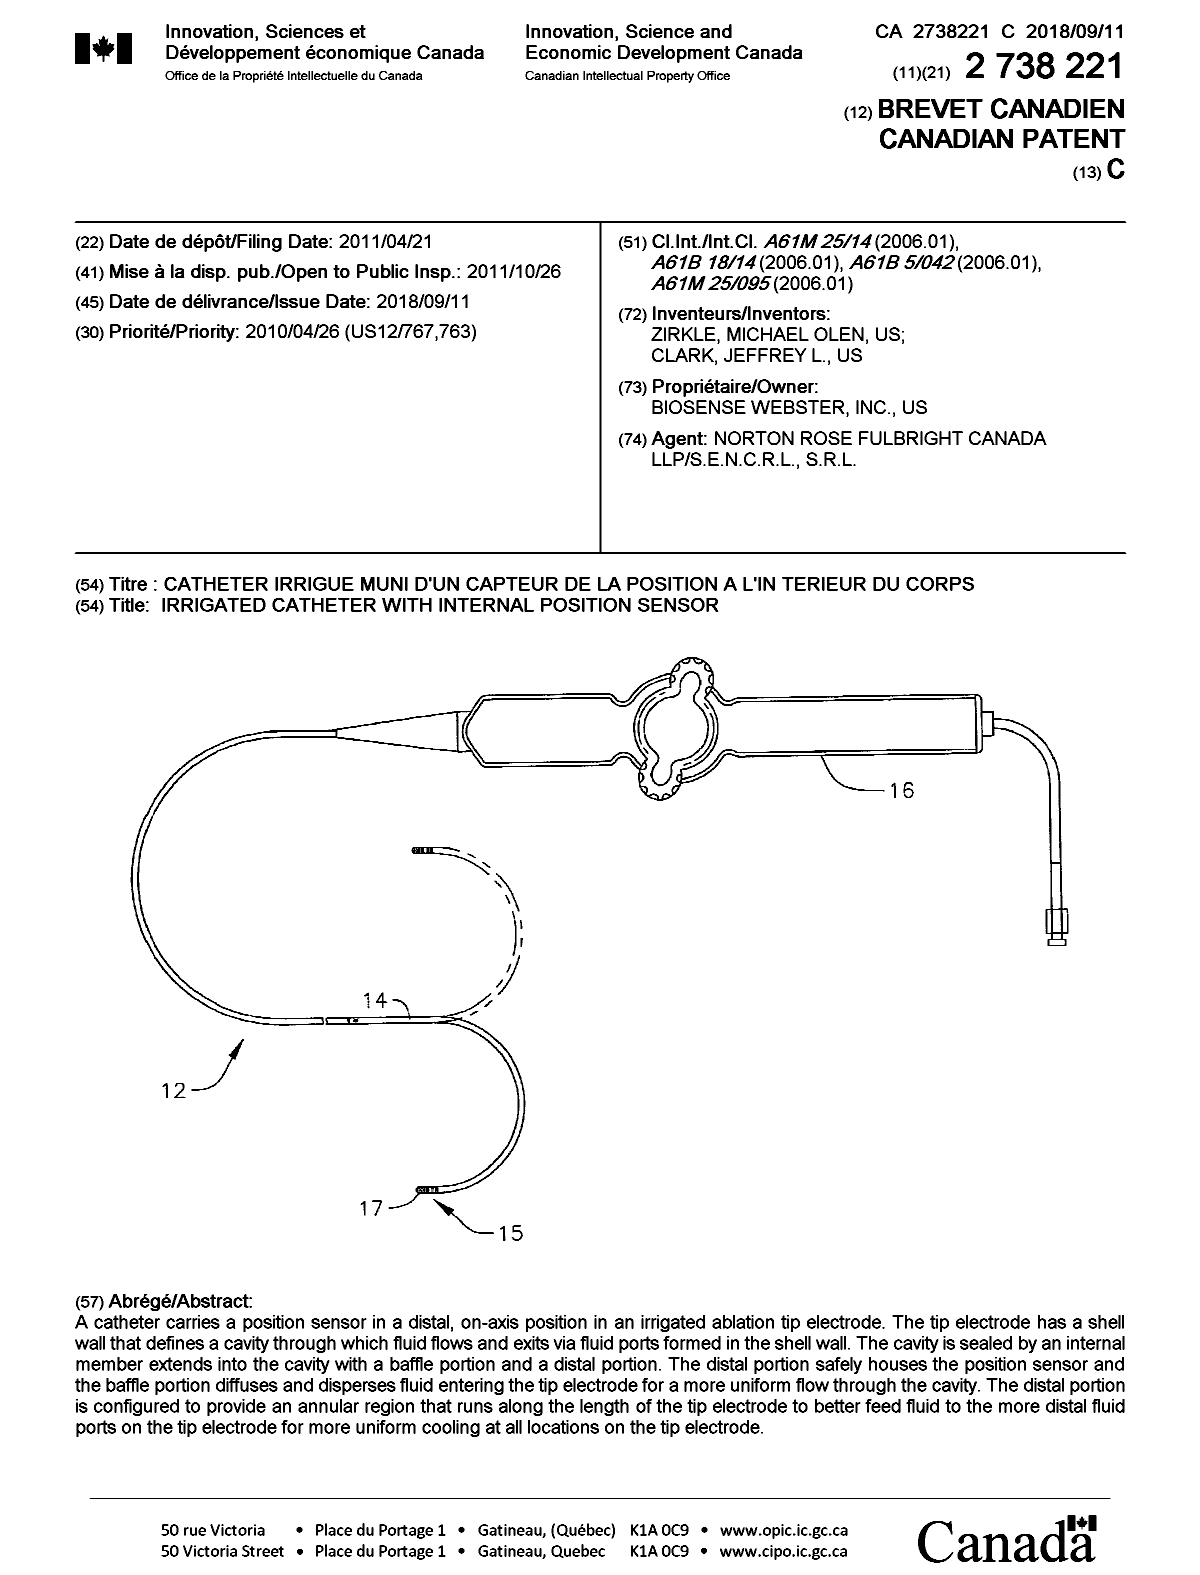 Document de brevet canadien 2738221. Page couverture 20180827. Image 1 de 1